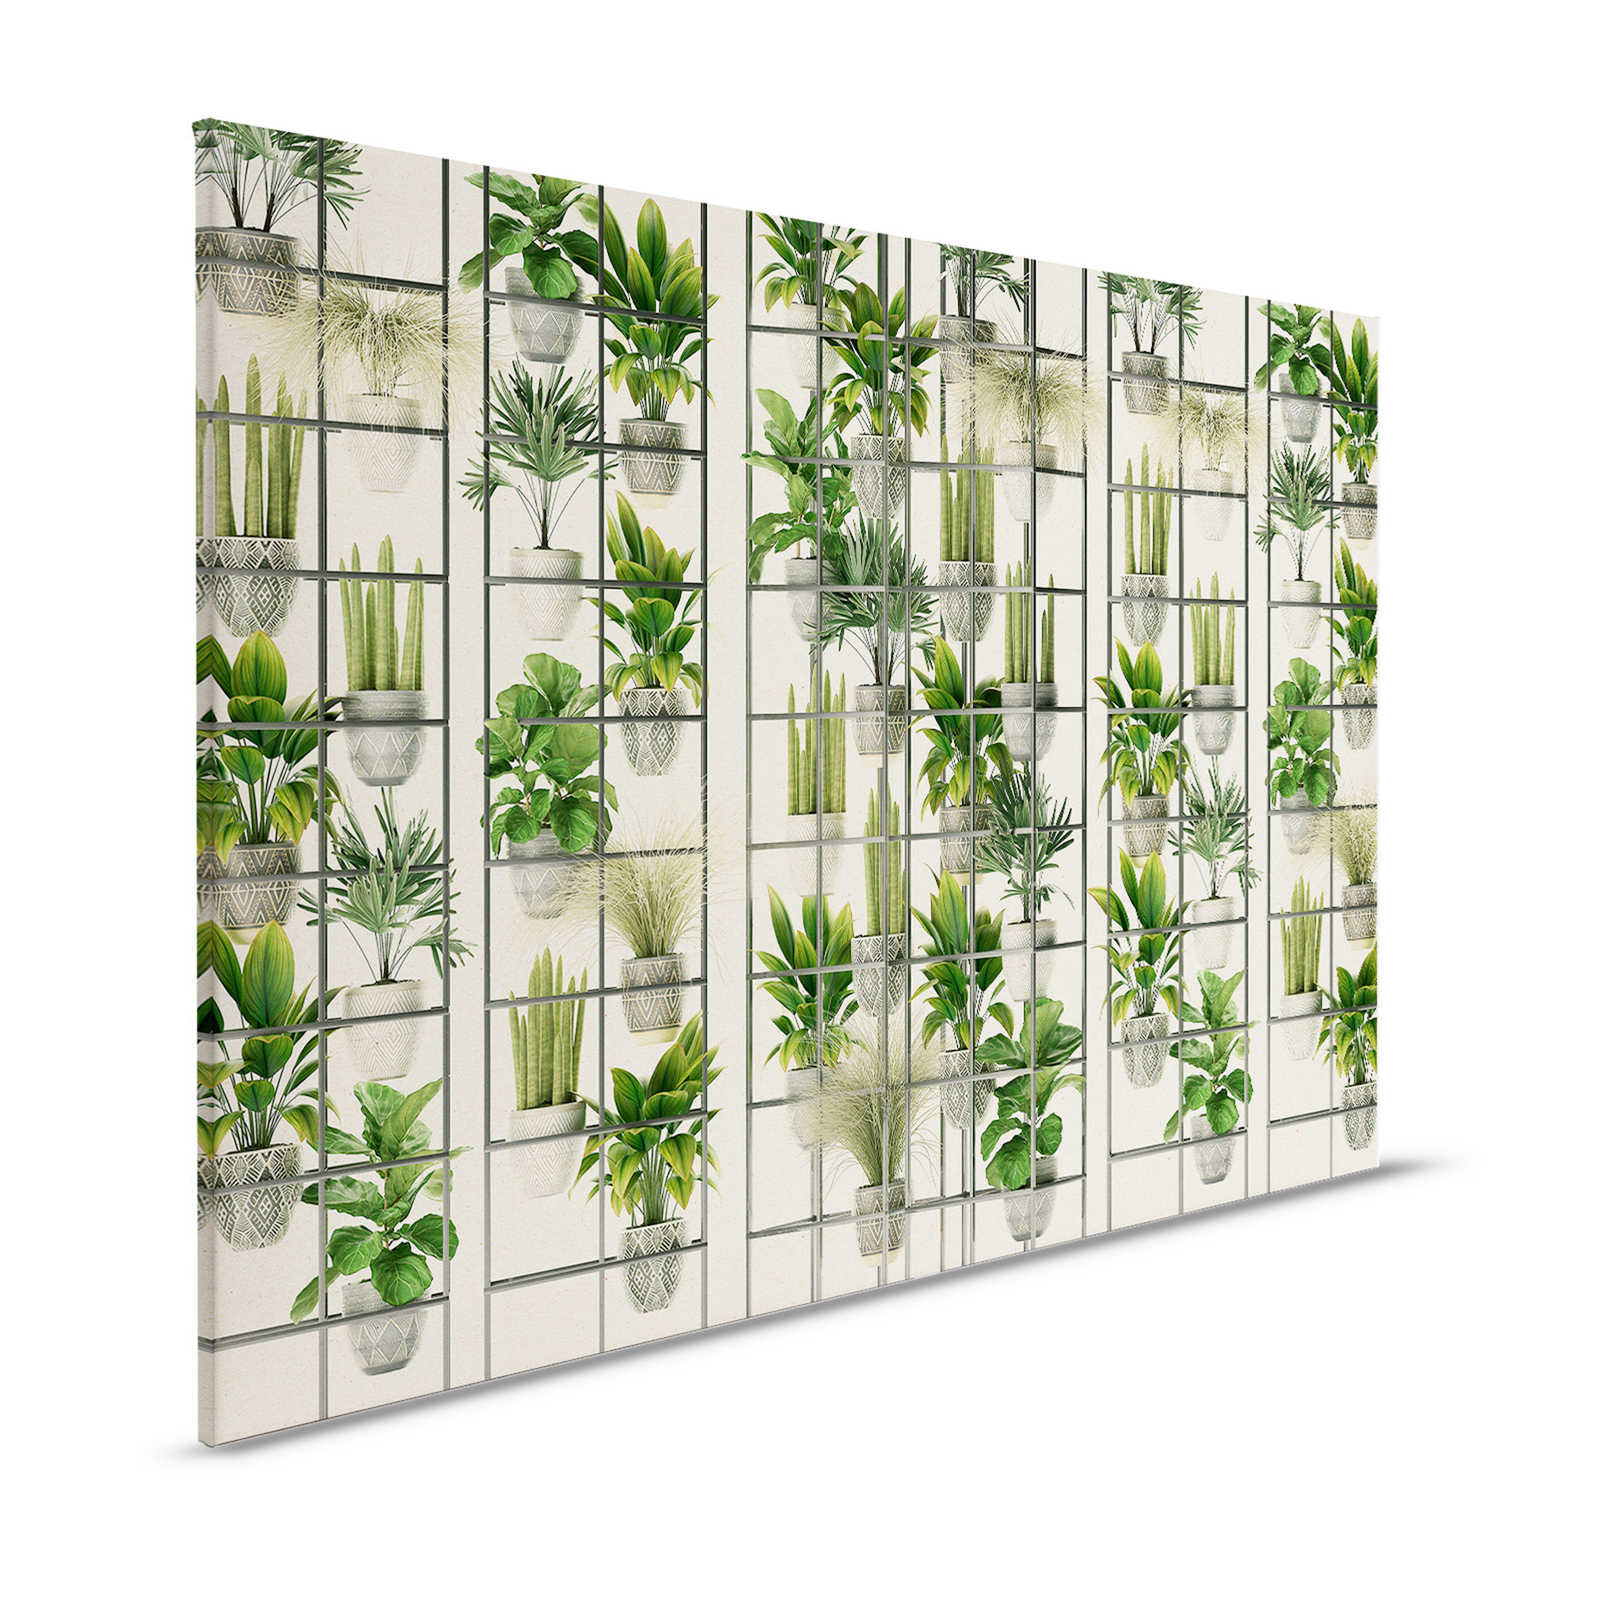 Negozio di piante 2 - Quadro su tela con piante moderne in verde e grigio - 1,20 m x 0,80 m
